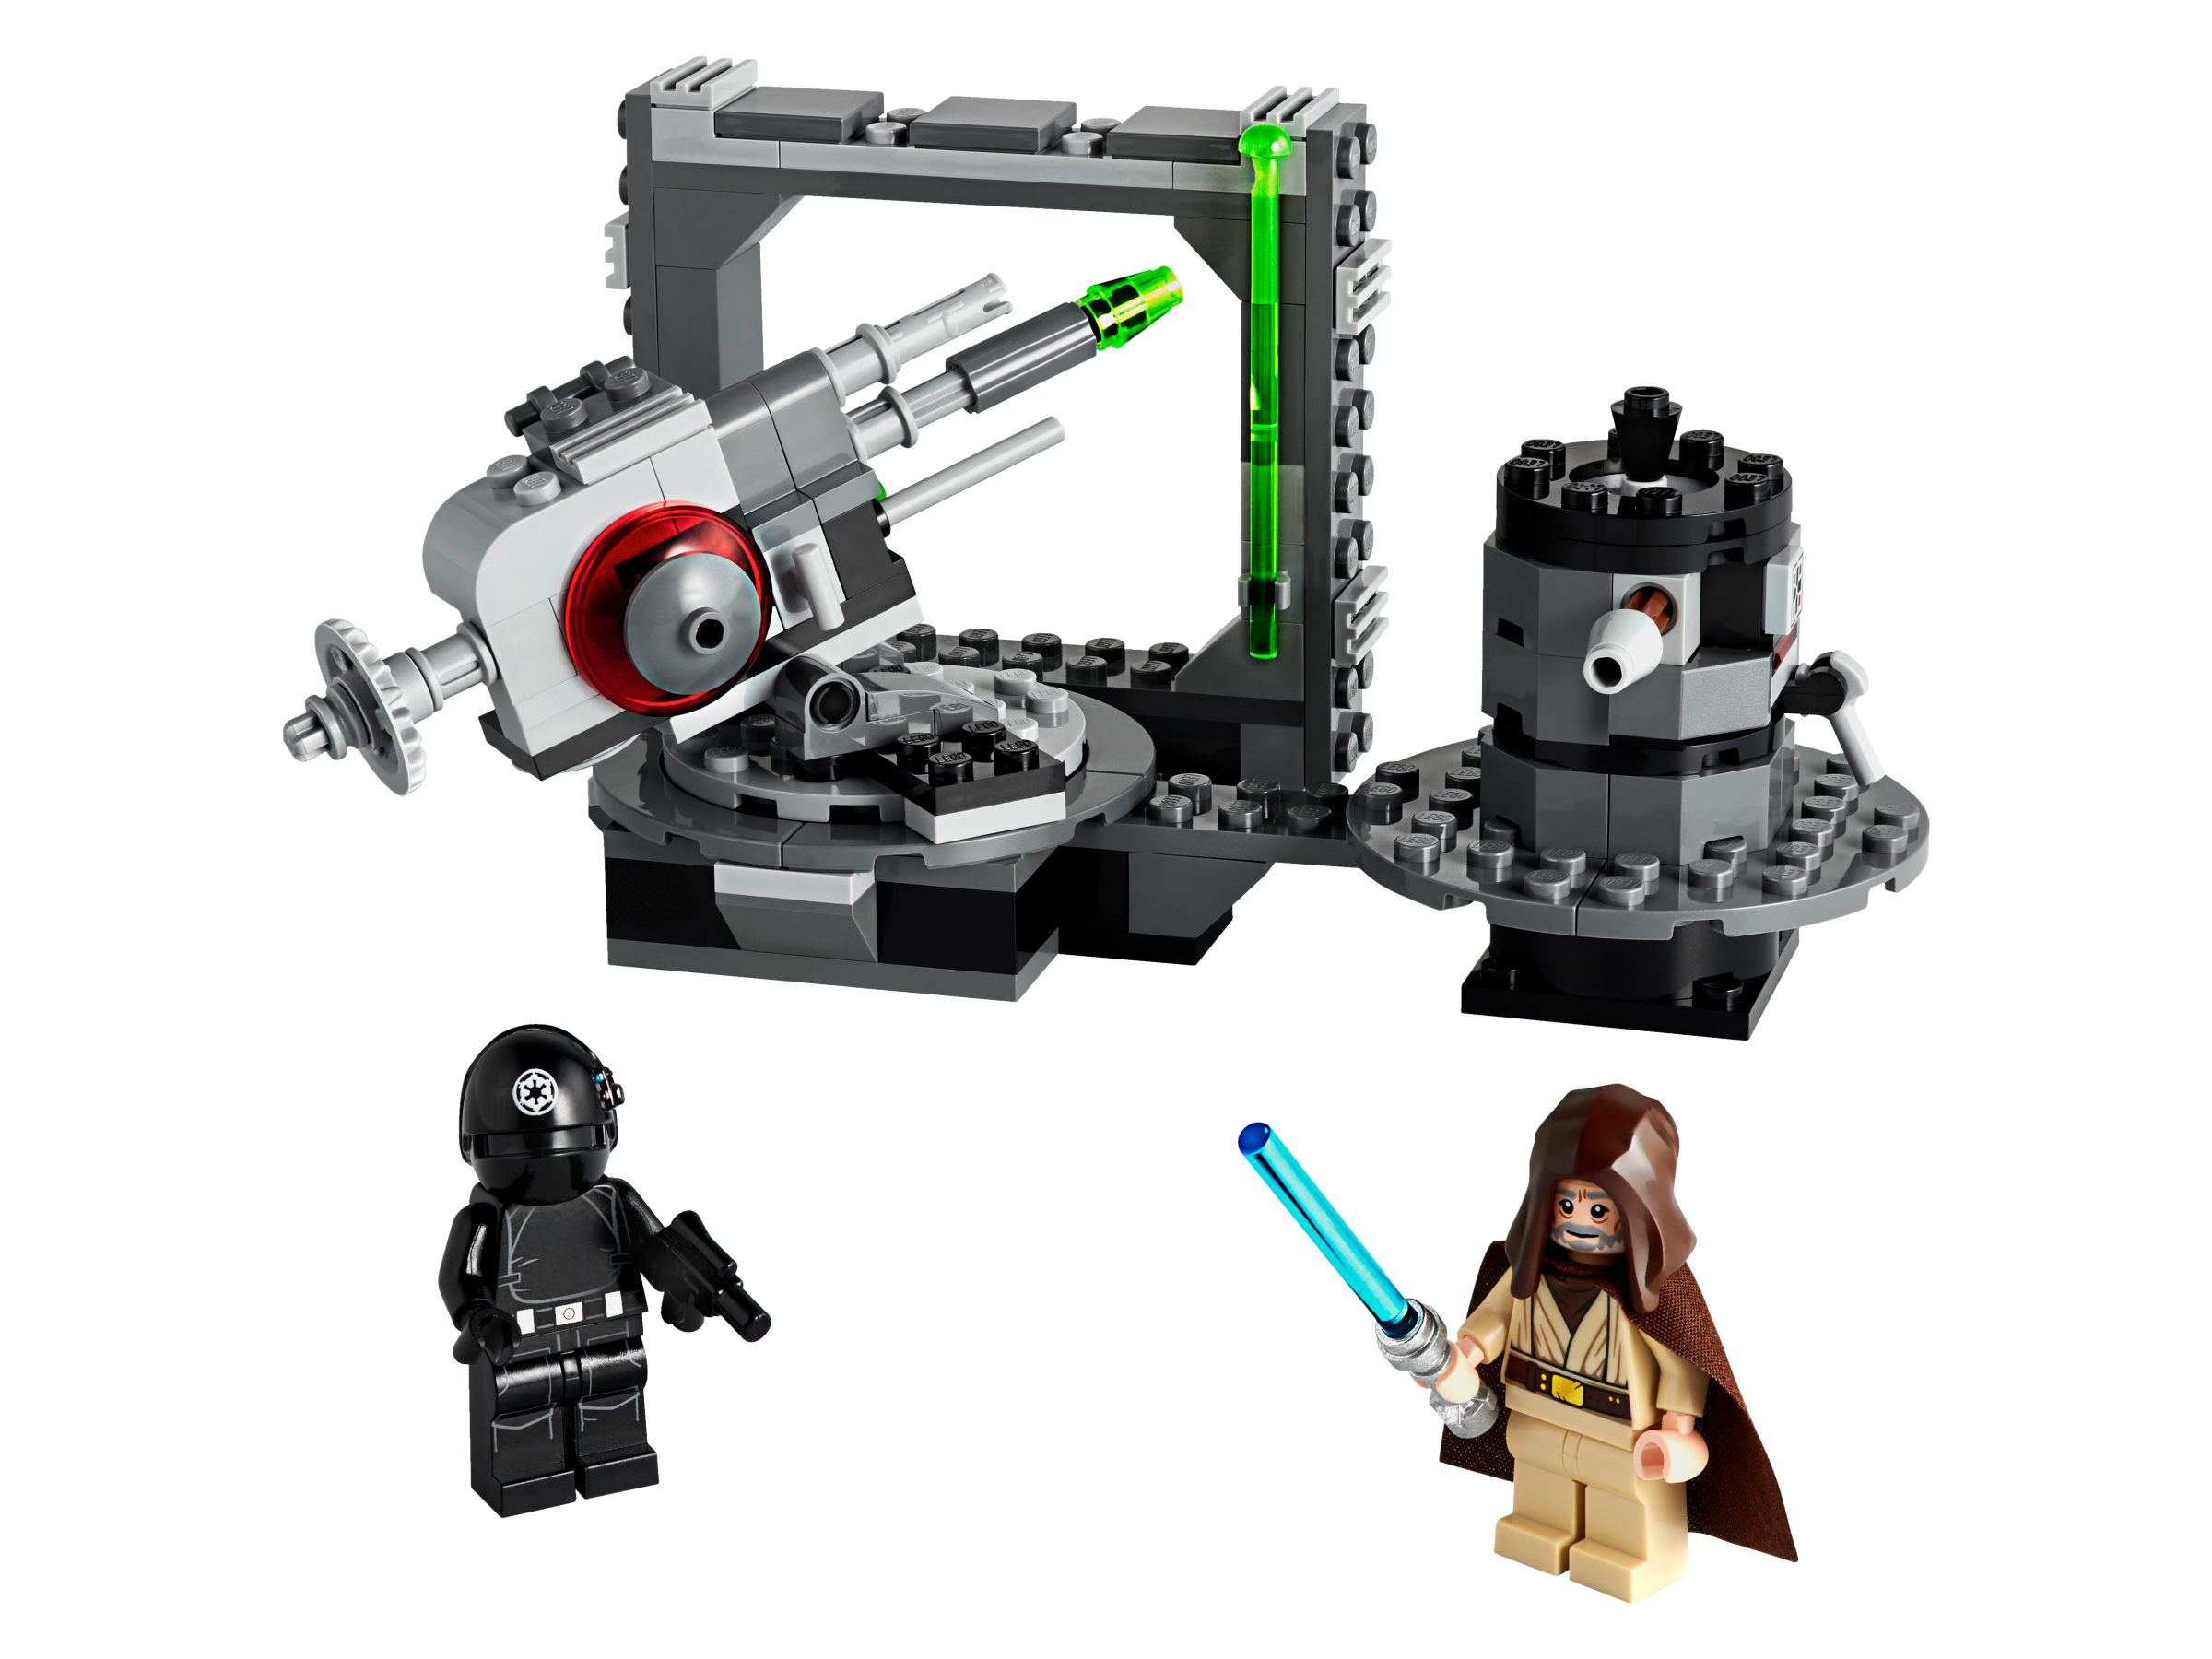 LEGO Star Wars - Death Star Cannon 75246